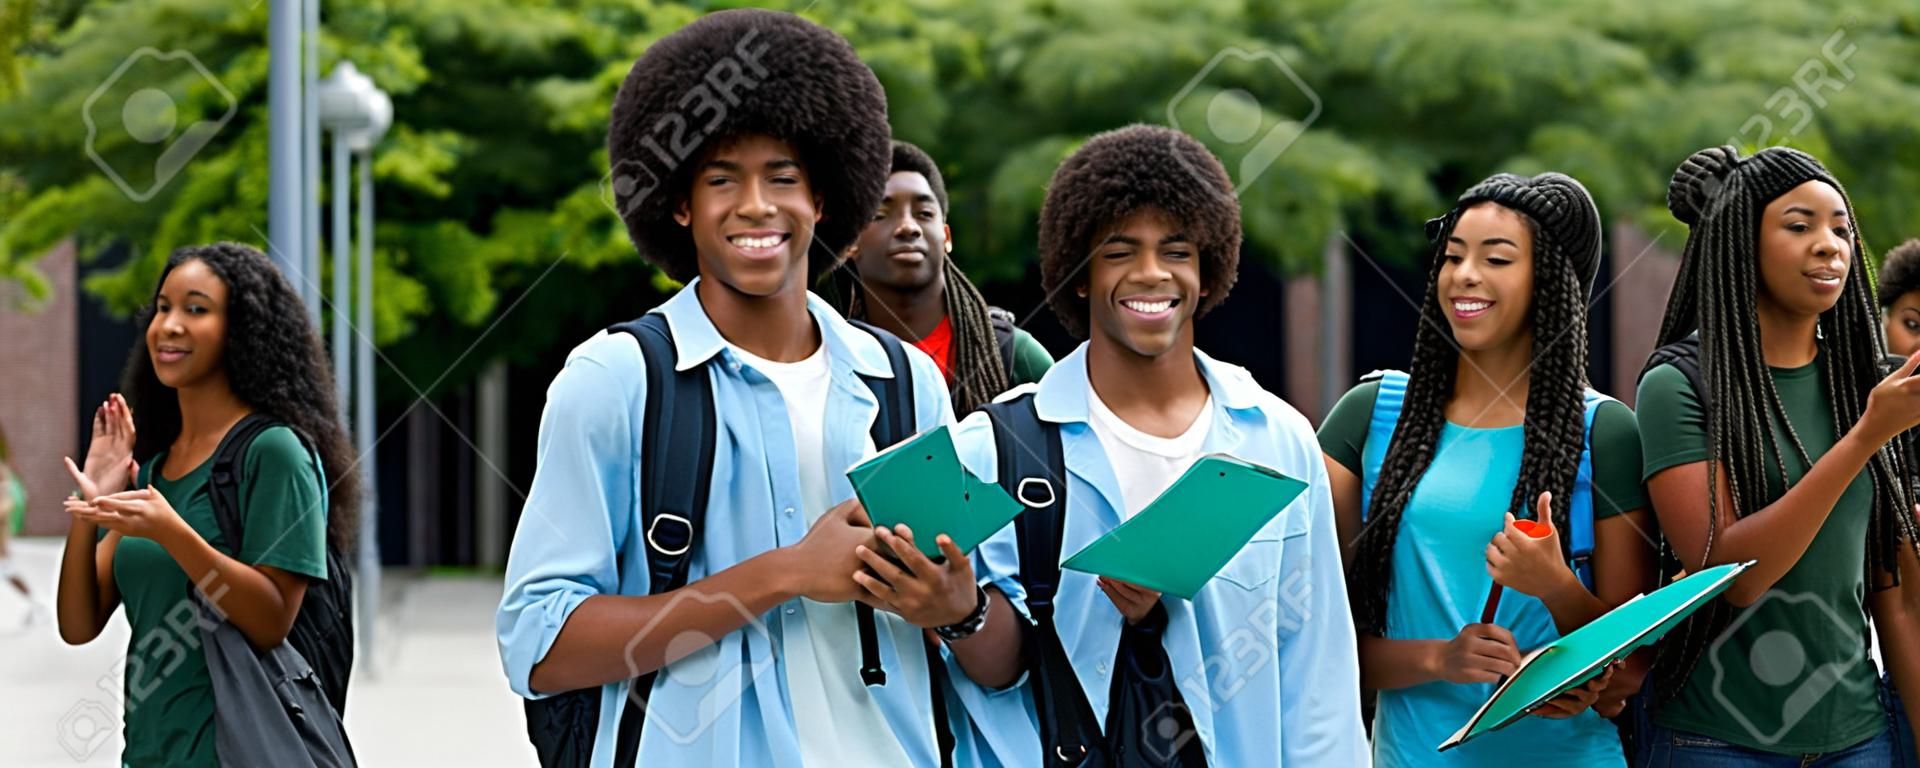 Studente maschio afroamericano incoraggiante con un gruppo di giovani adulti